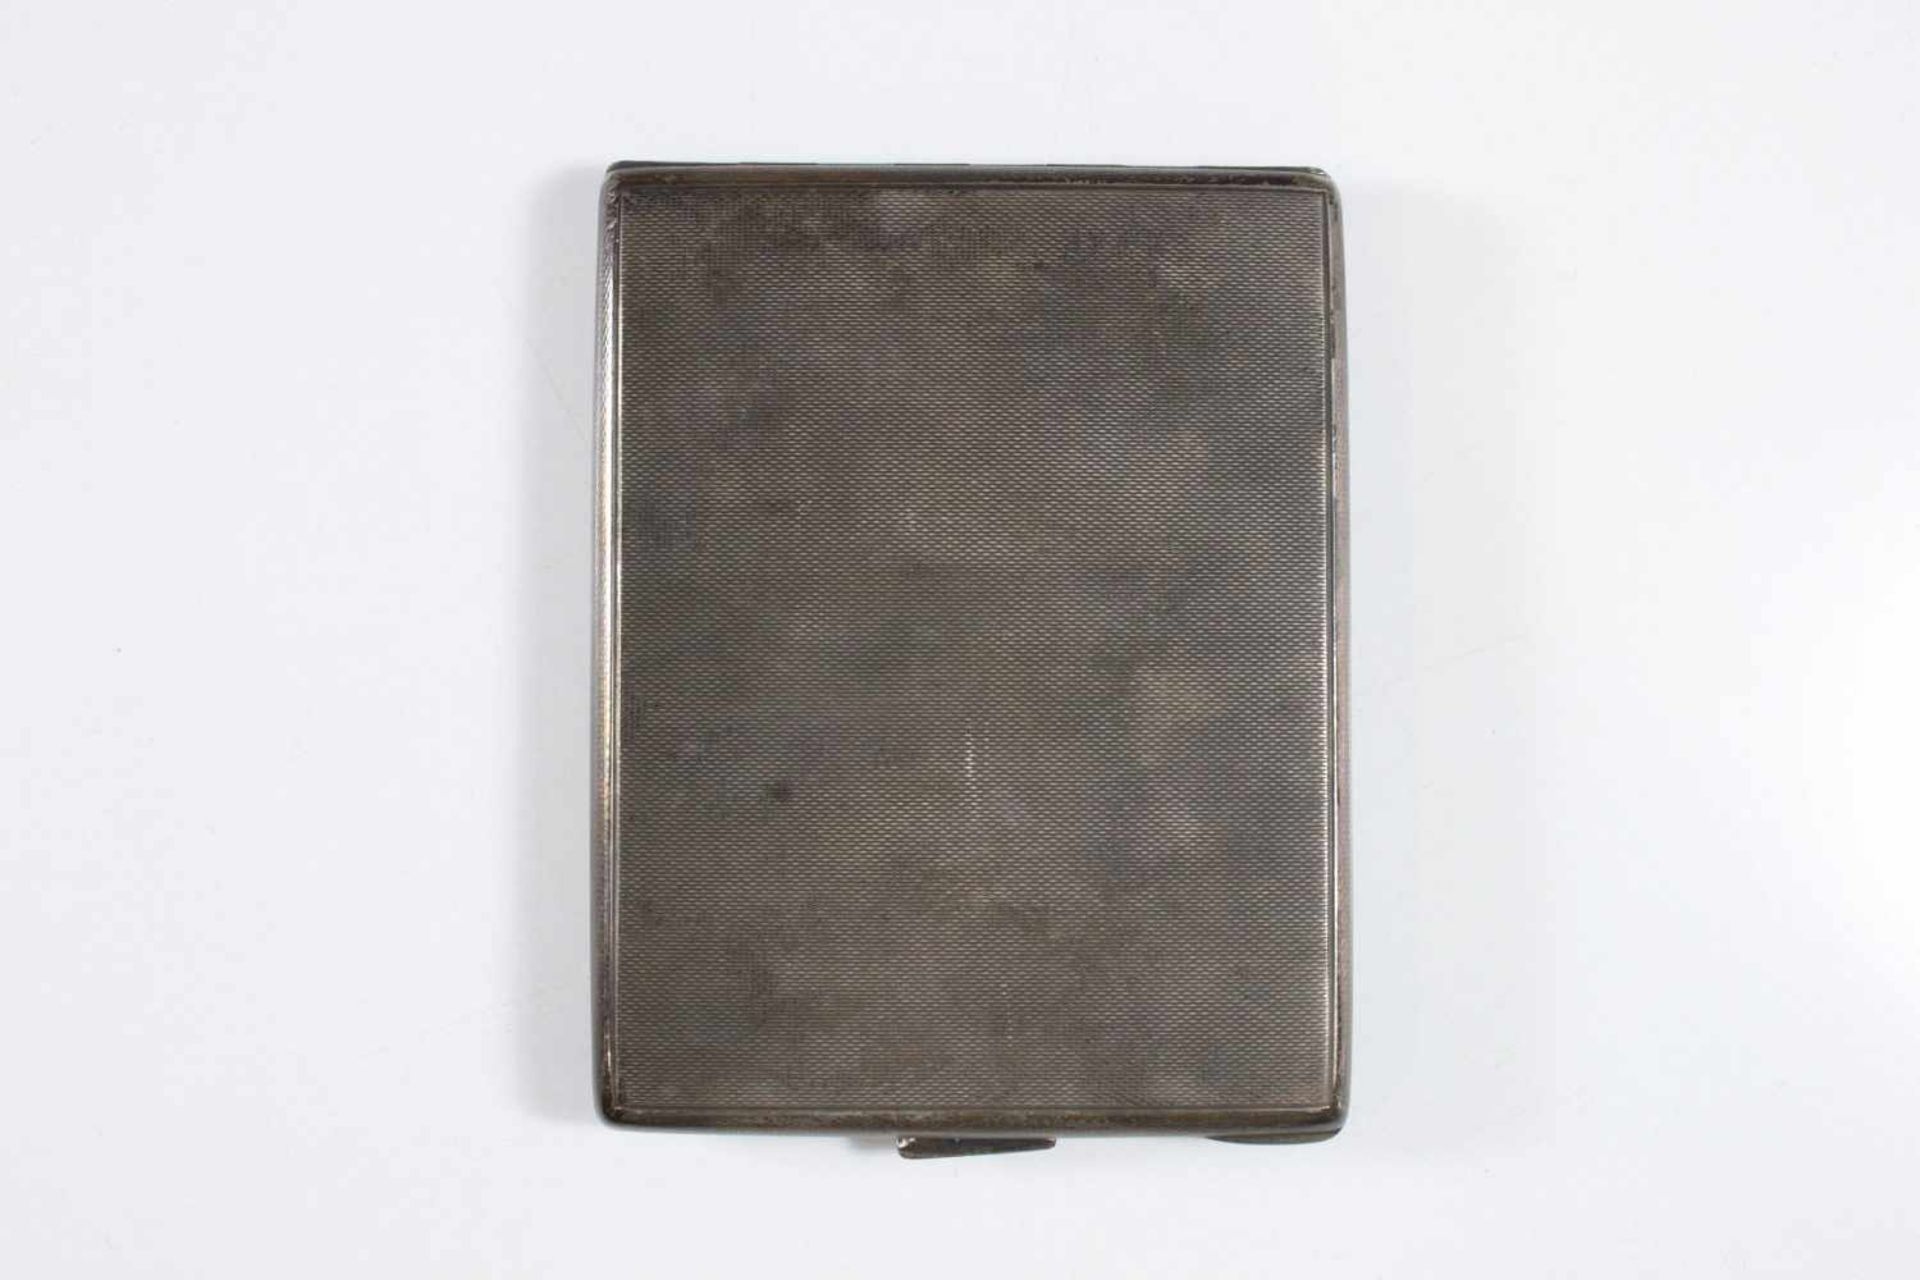 Zigarettenetui, Silber punziert 925er Halbmond und Krone, Gewicht ca. 138 gr., Maße: 10 x 8 x 1 cm.